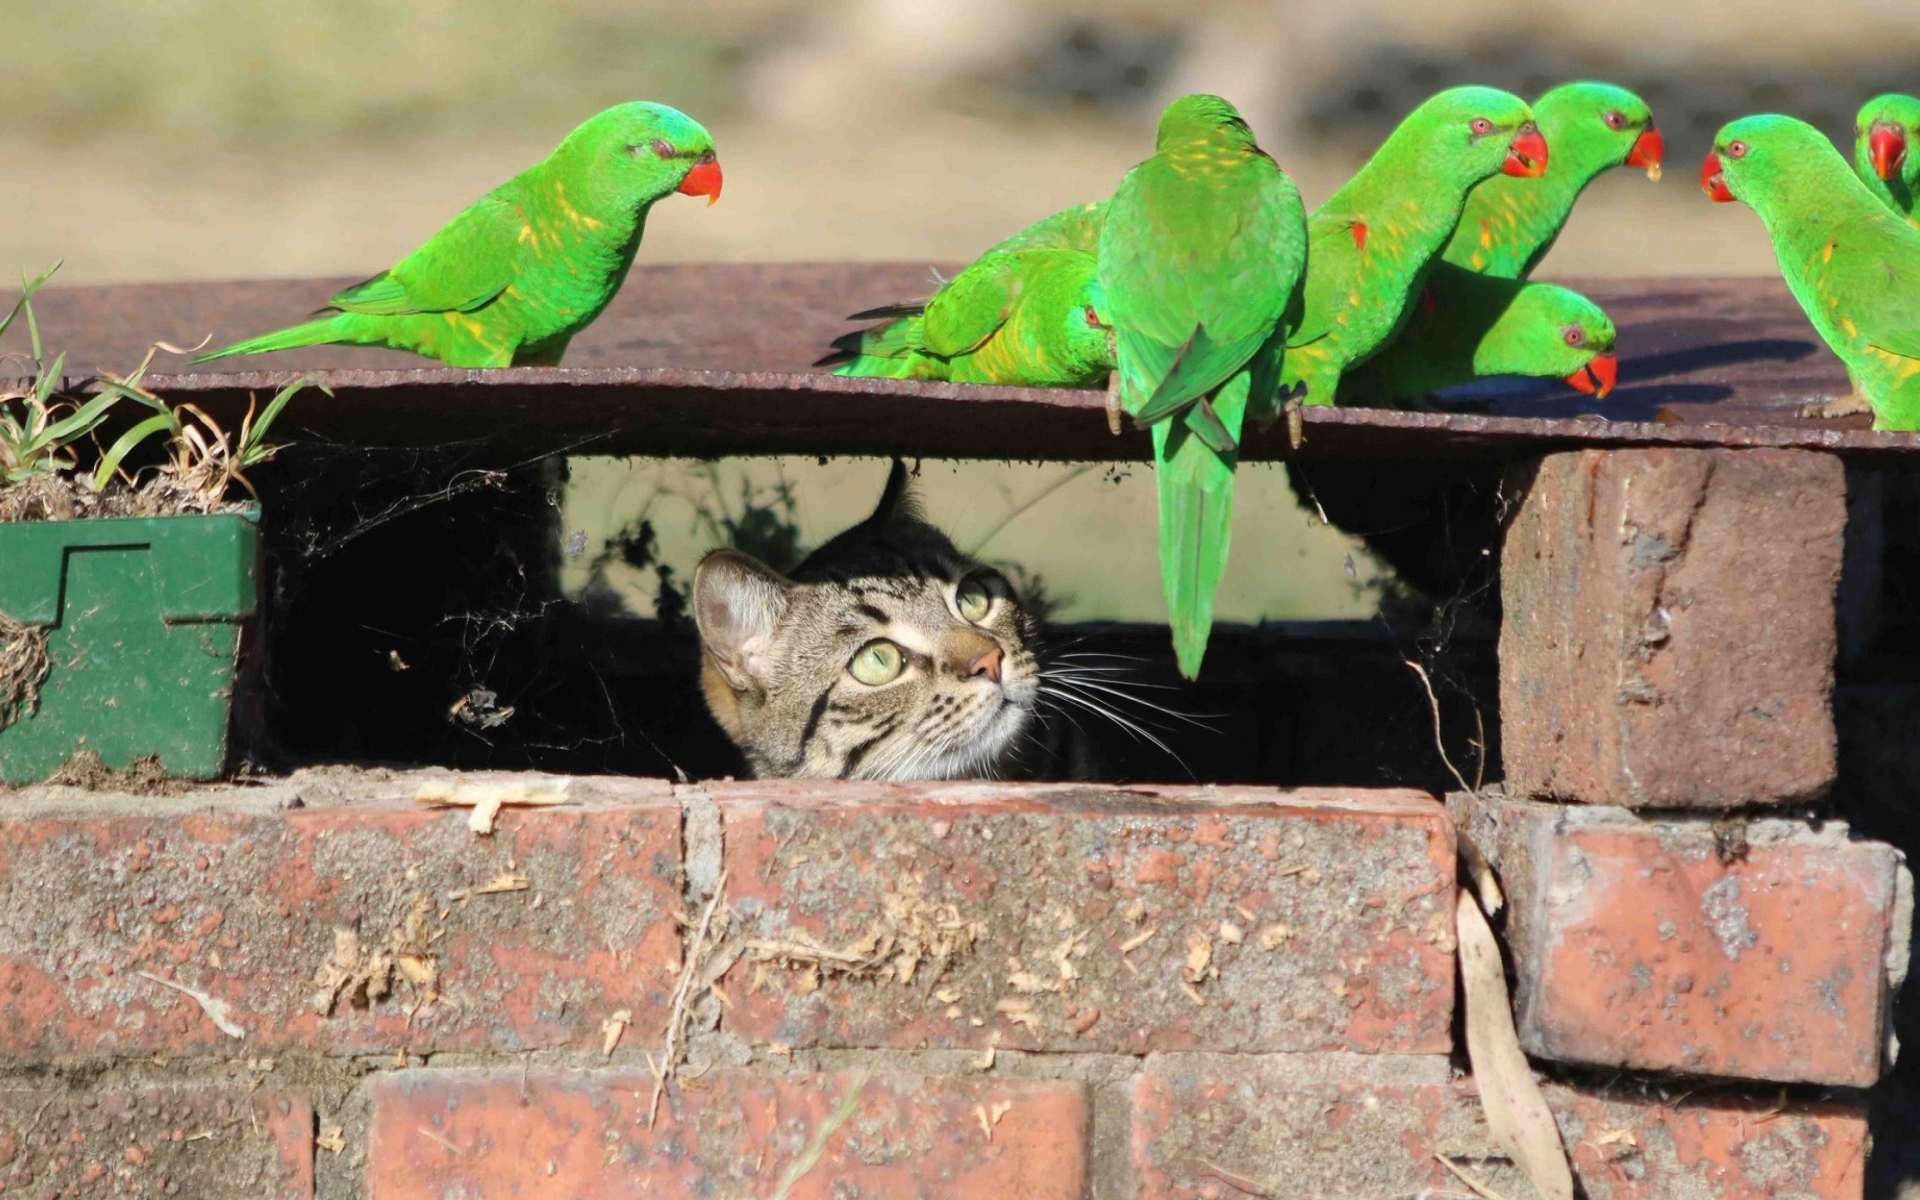 Серый кот следит за зелеными попугаями